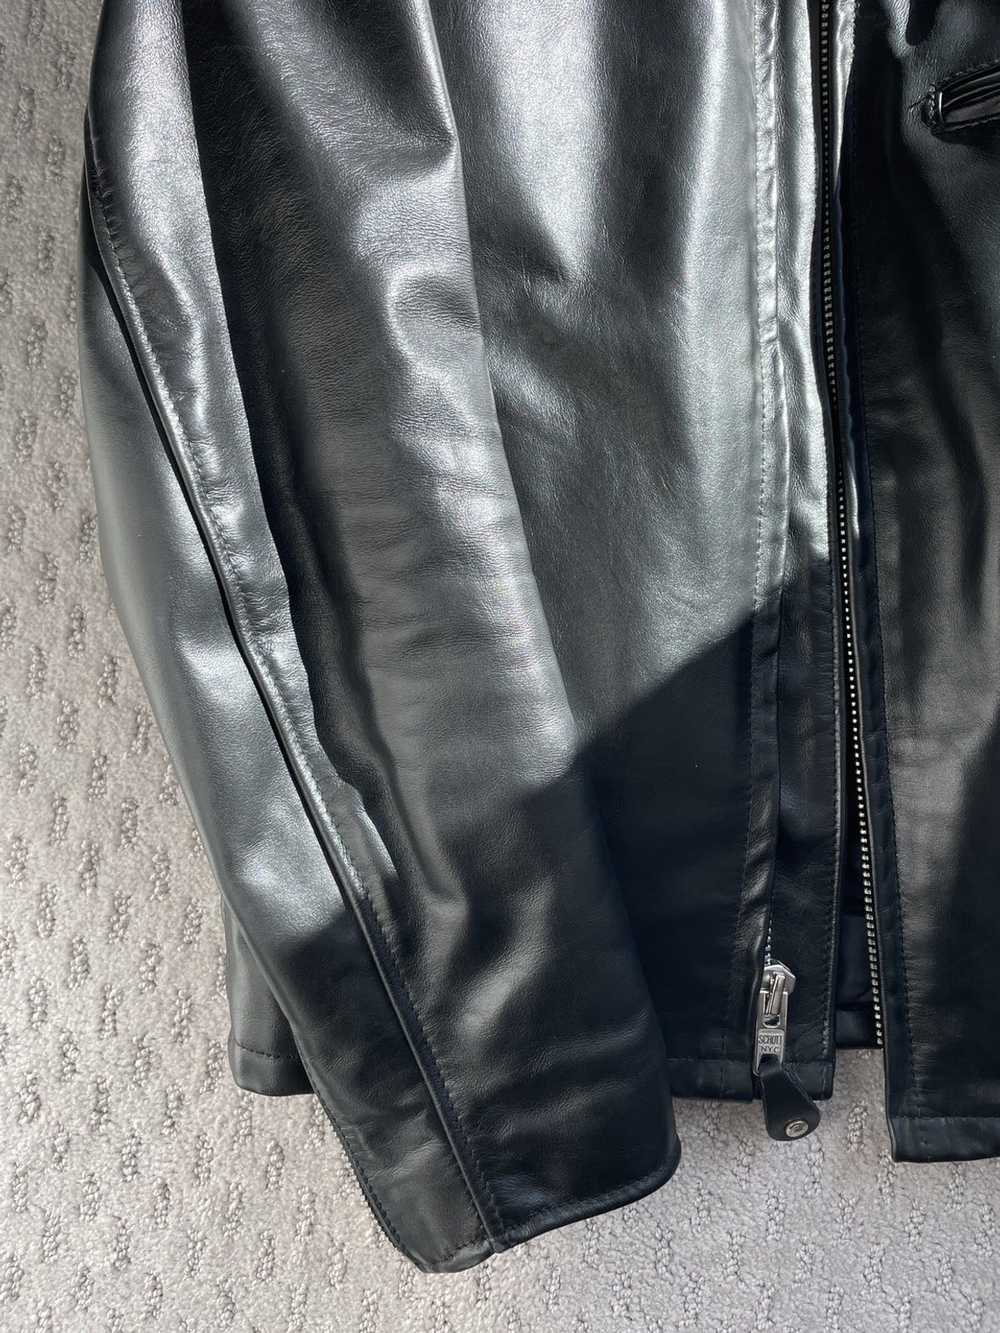 Schott schott horsehide leather jacket - image 3